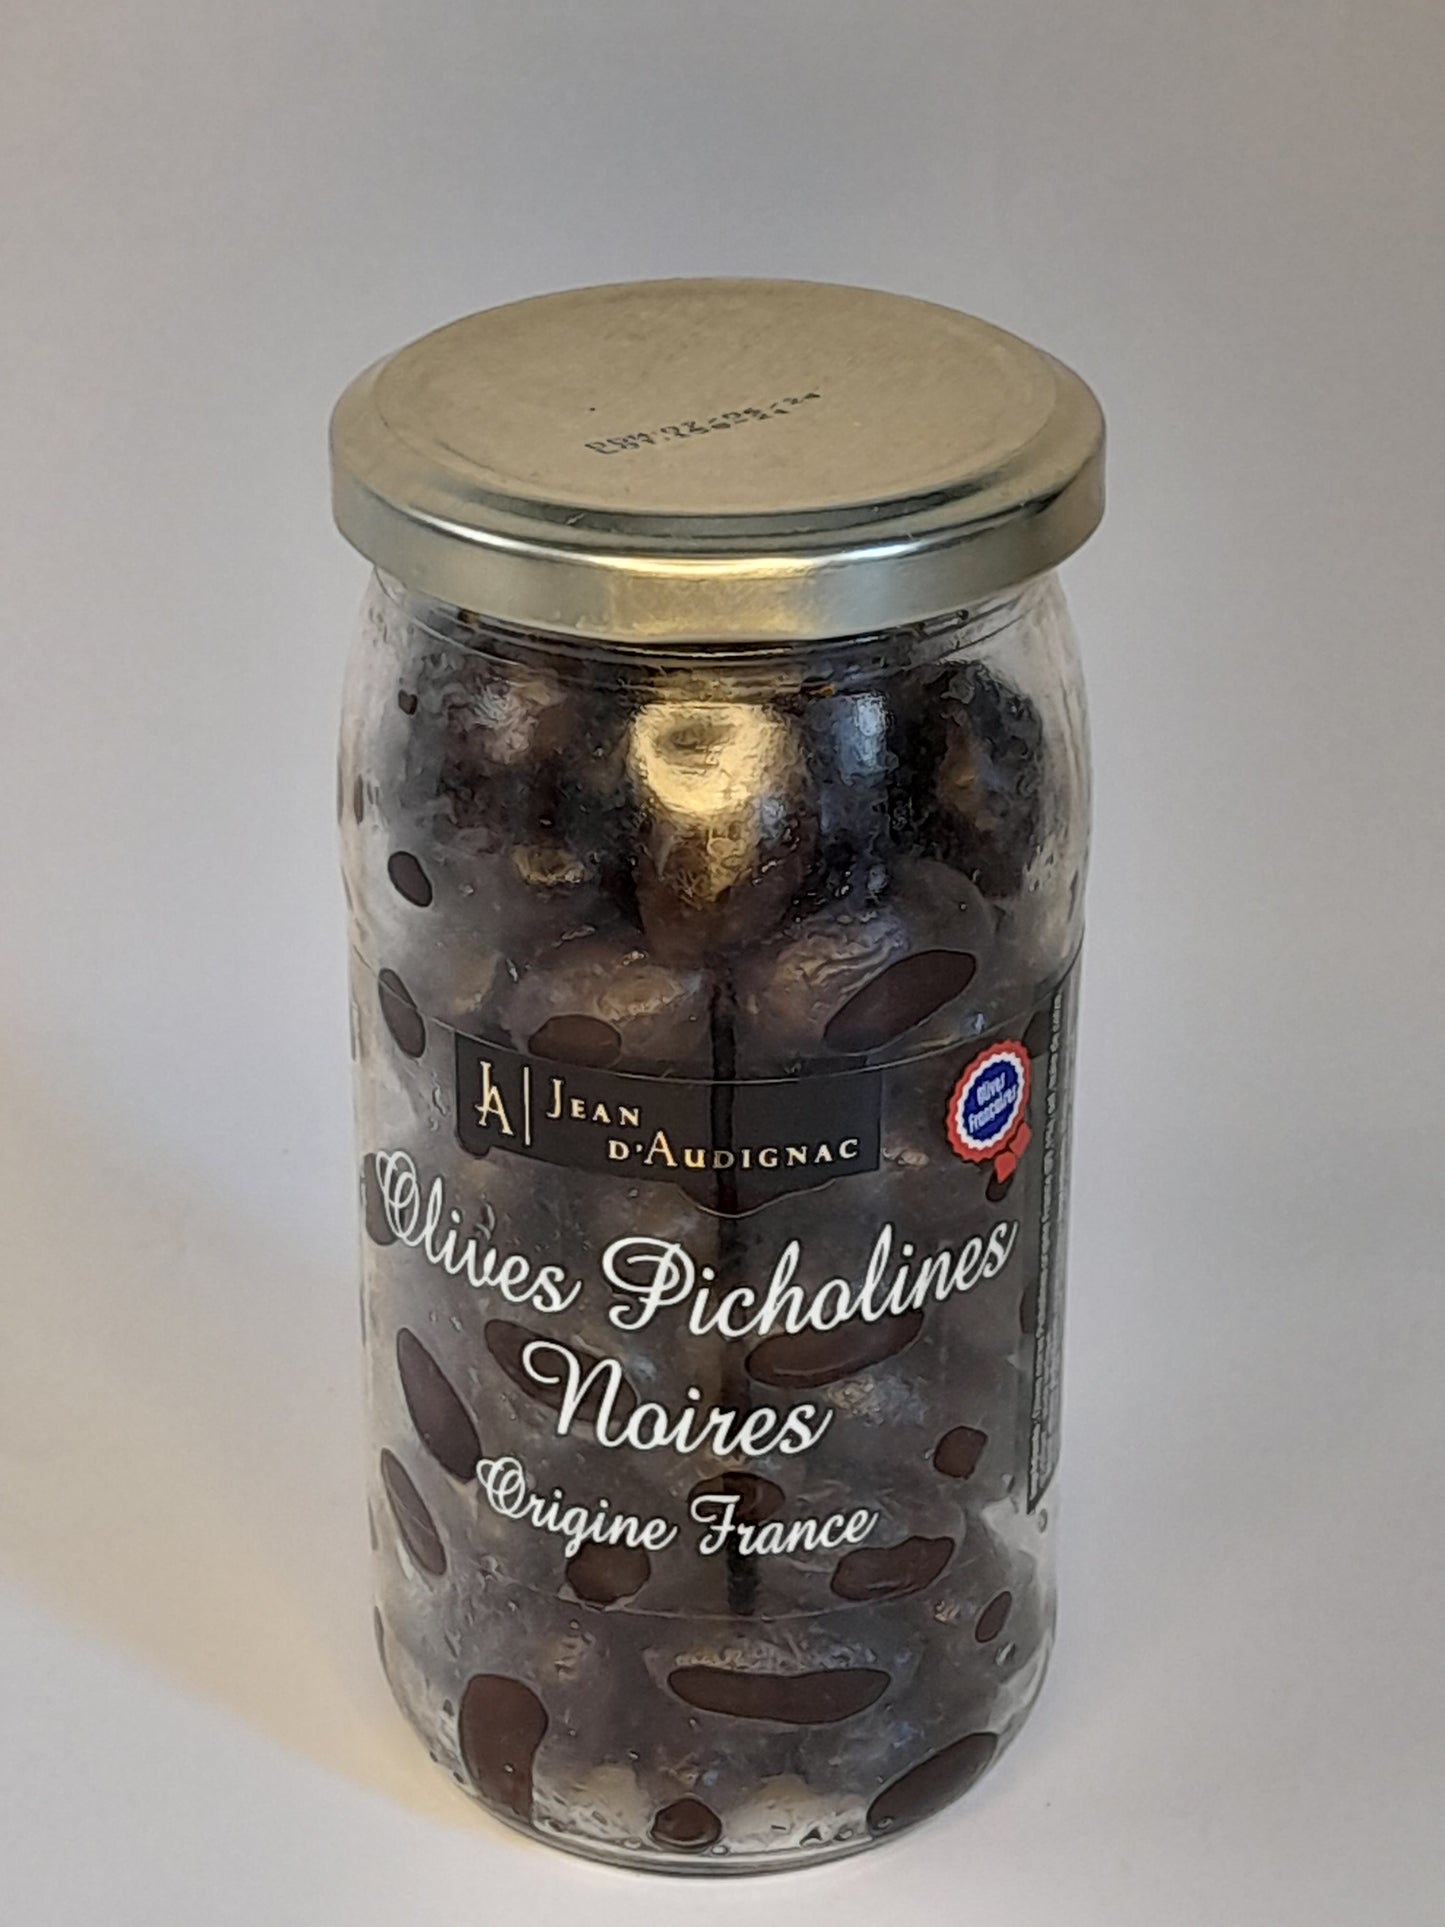 Olives picholines noires. Origine France. 200G